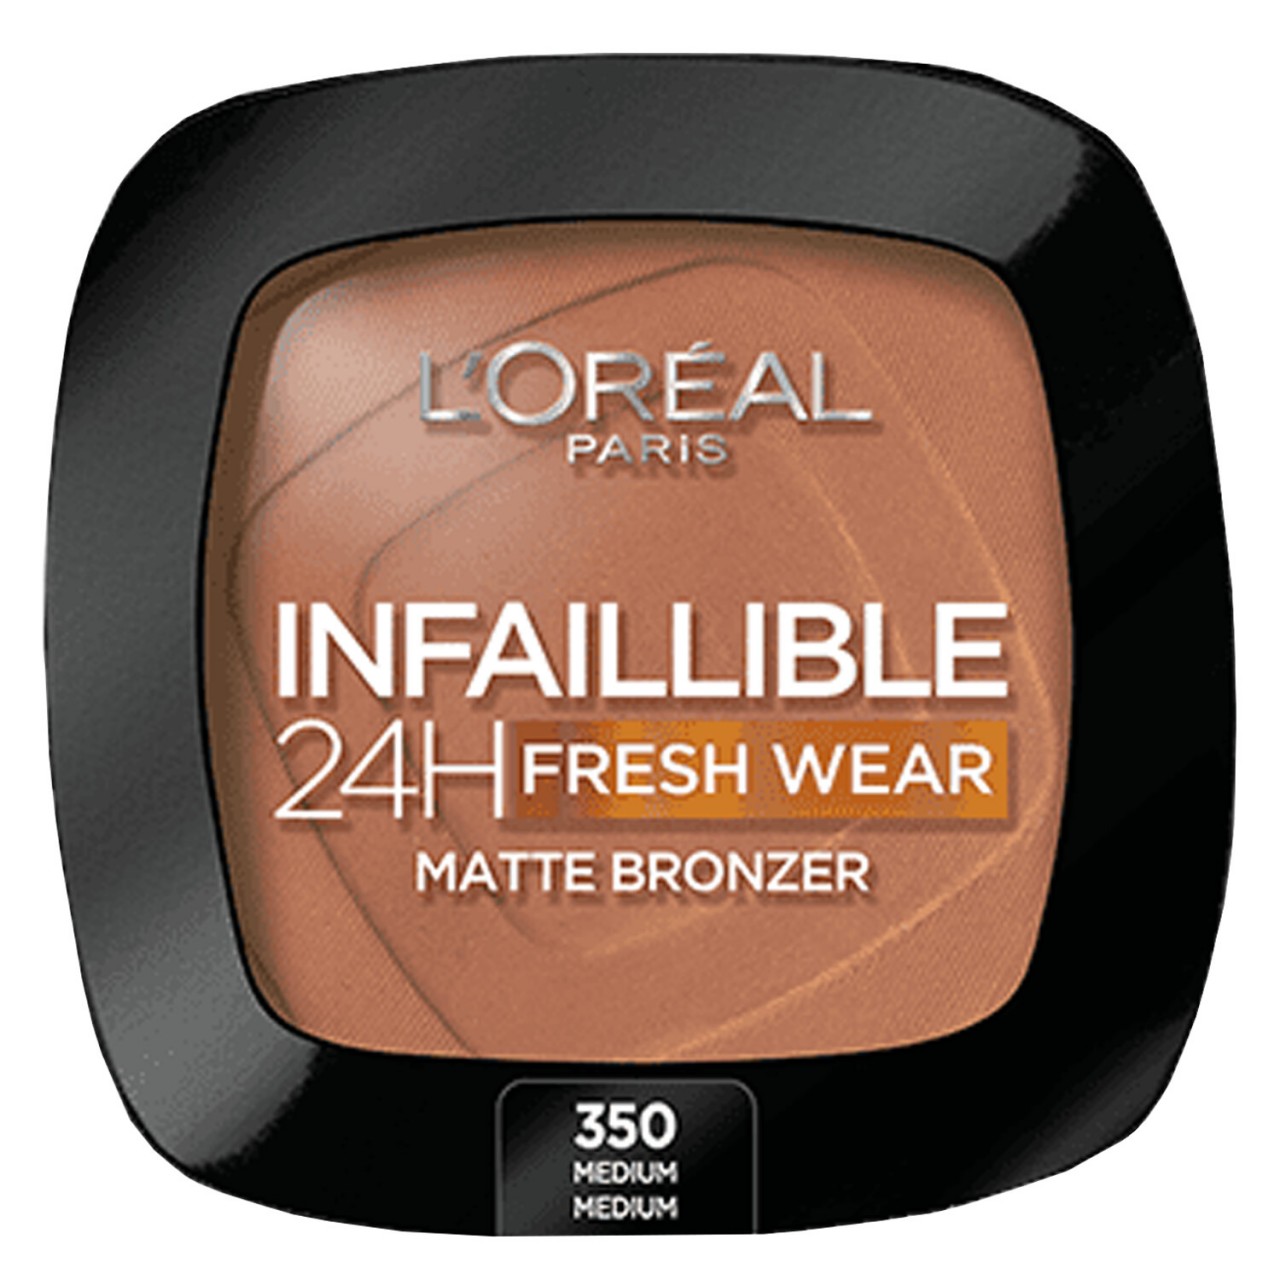 LOréal Infaillible - 24H Fresh Wear Matte Bronzer 350 Medium von L'Oréal Paris